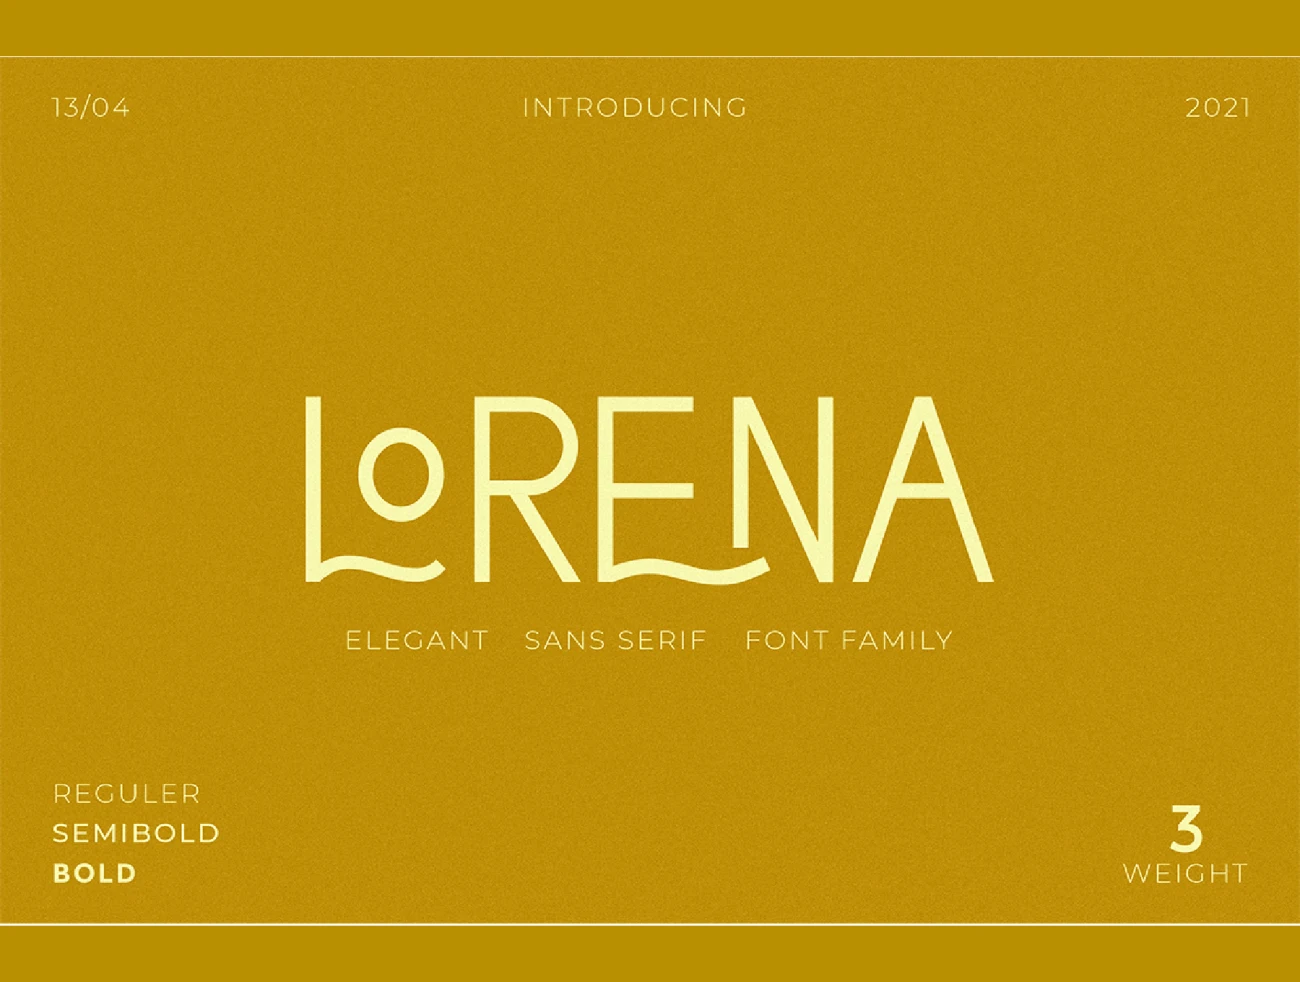 3字重全大写连体极简主义现代典雅英文字体 Lorena Typeface插图3